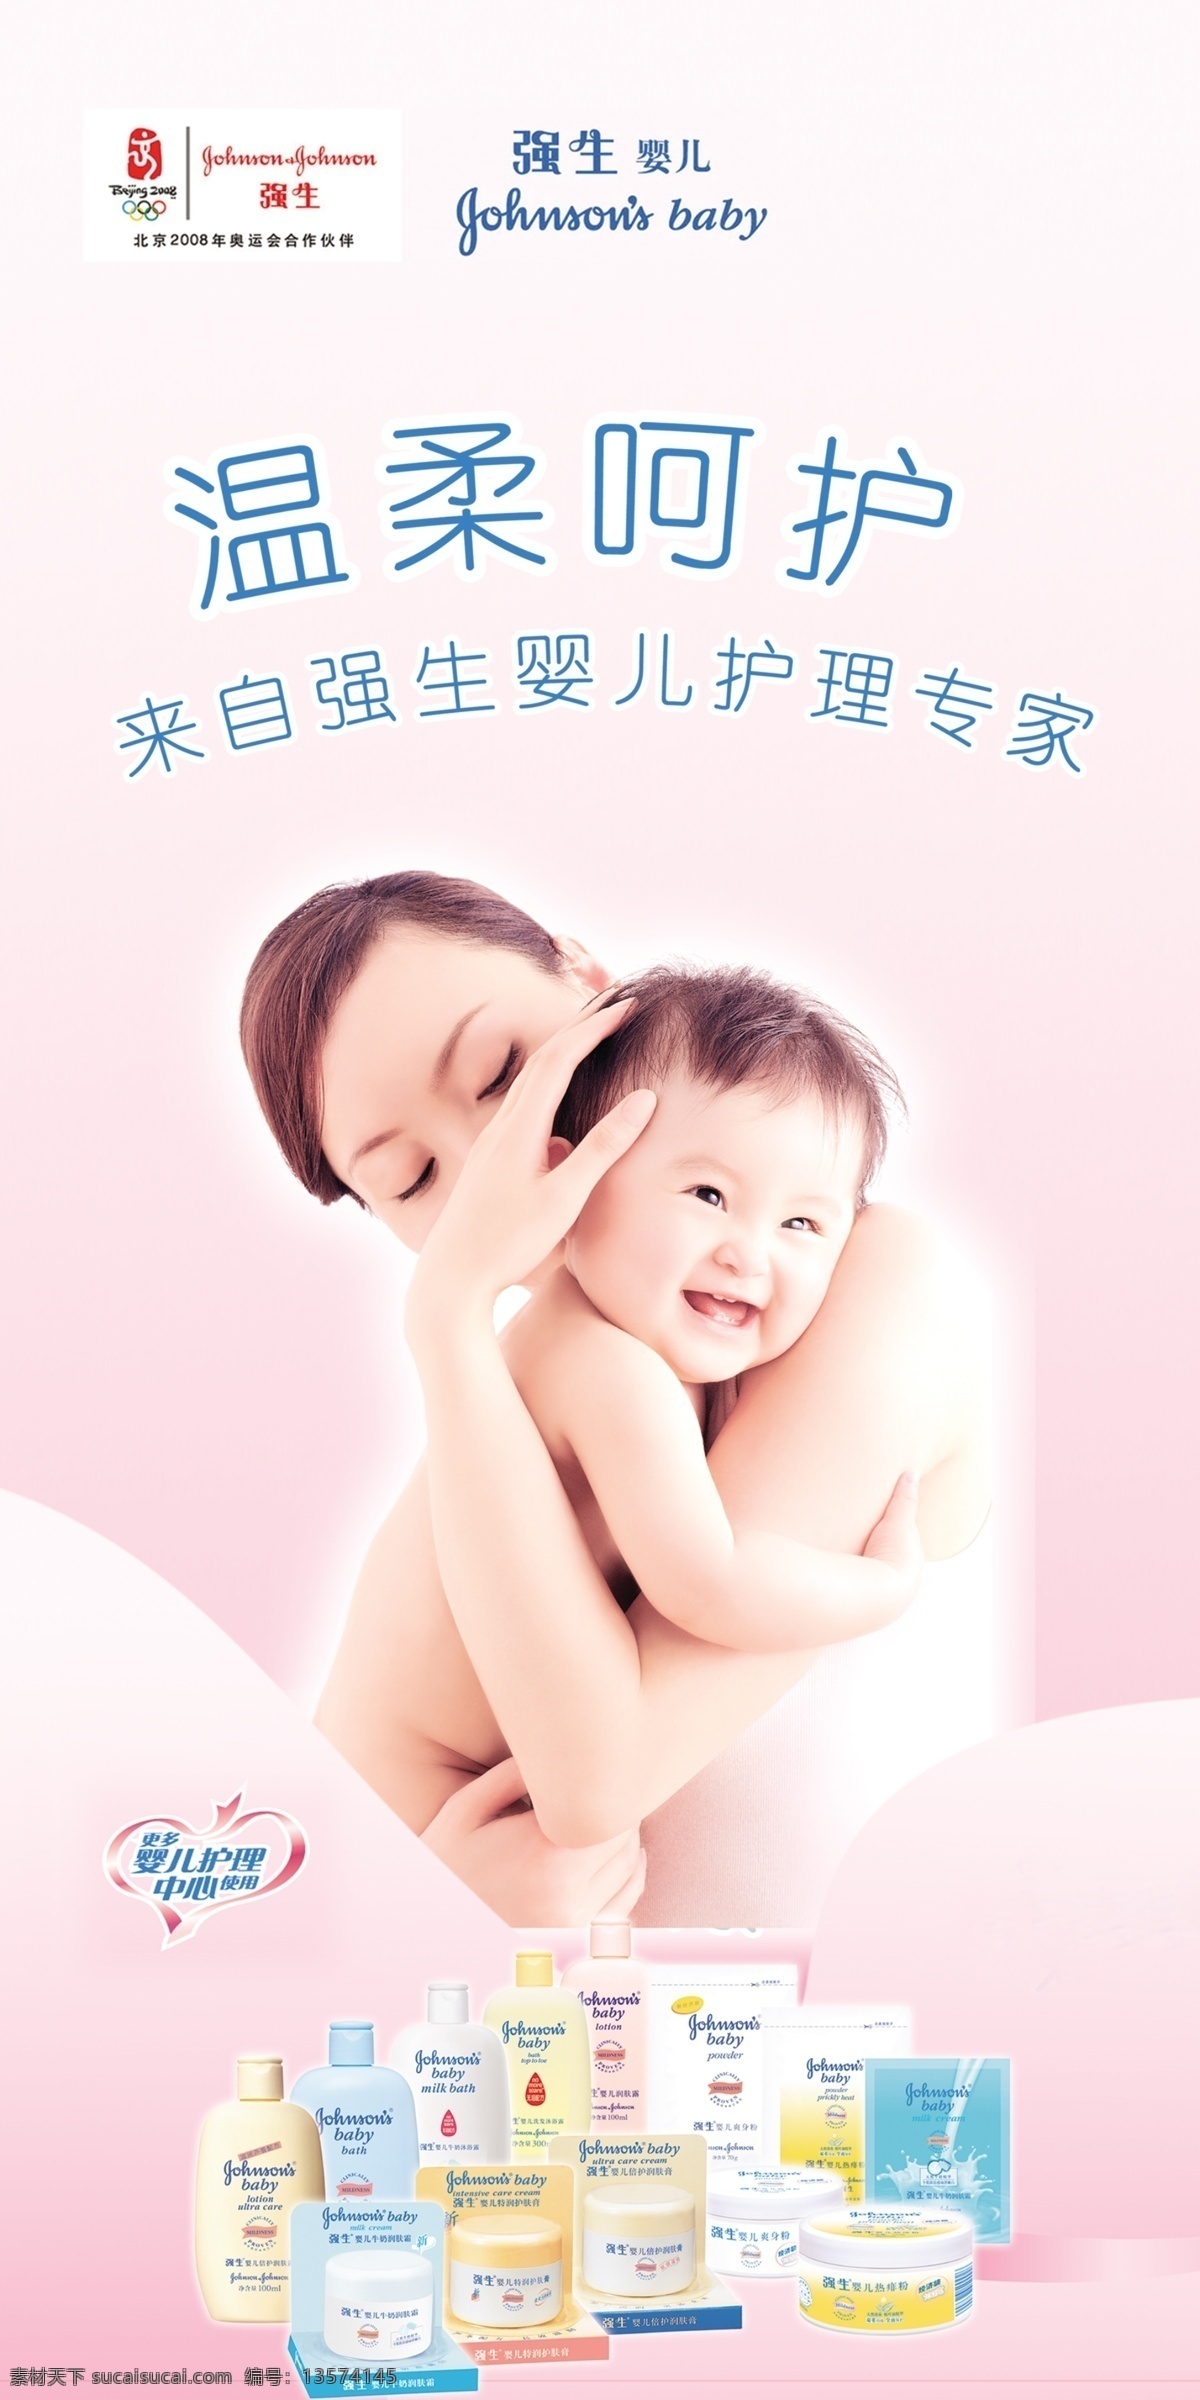 强生婴儿用品 强生 婴儿用品 北京奥运会标 母爱 婴儿 温柔呵护 知名品牌 生动 化 国外广告设计 广告设计模板 源文件